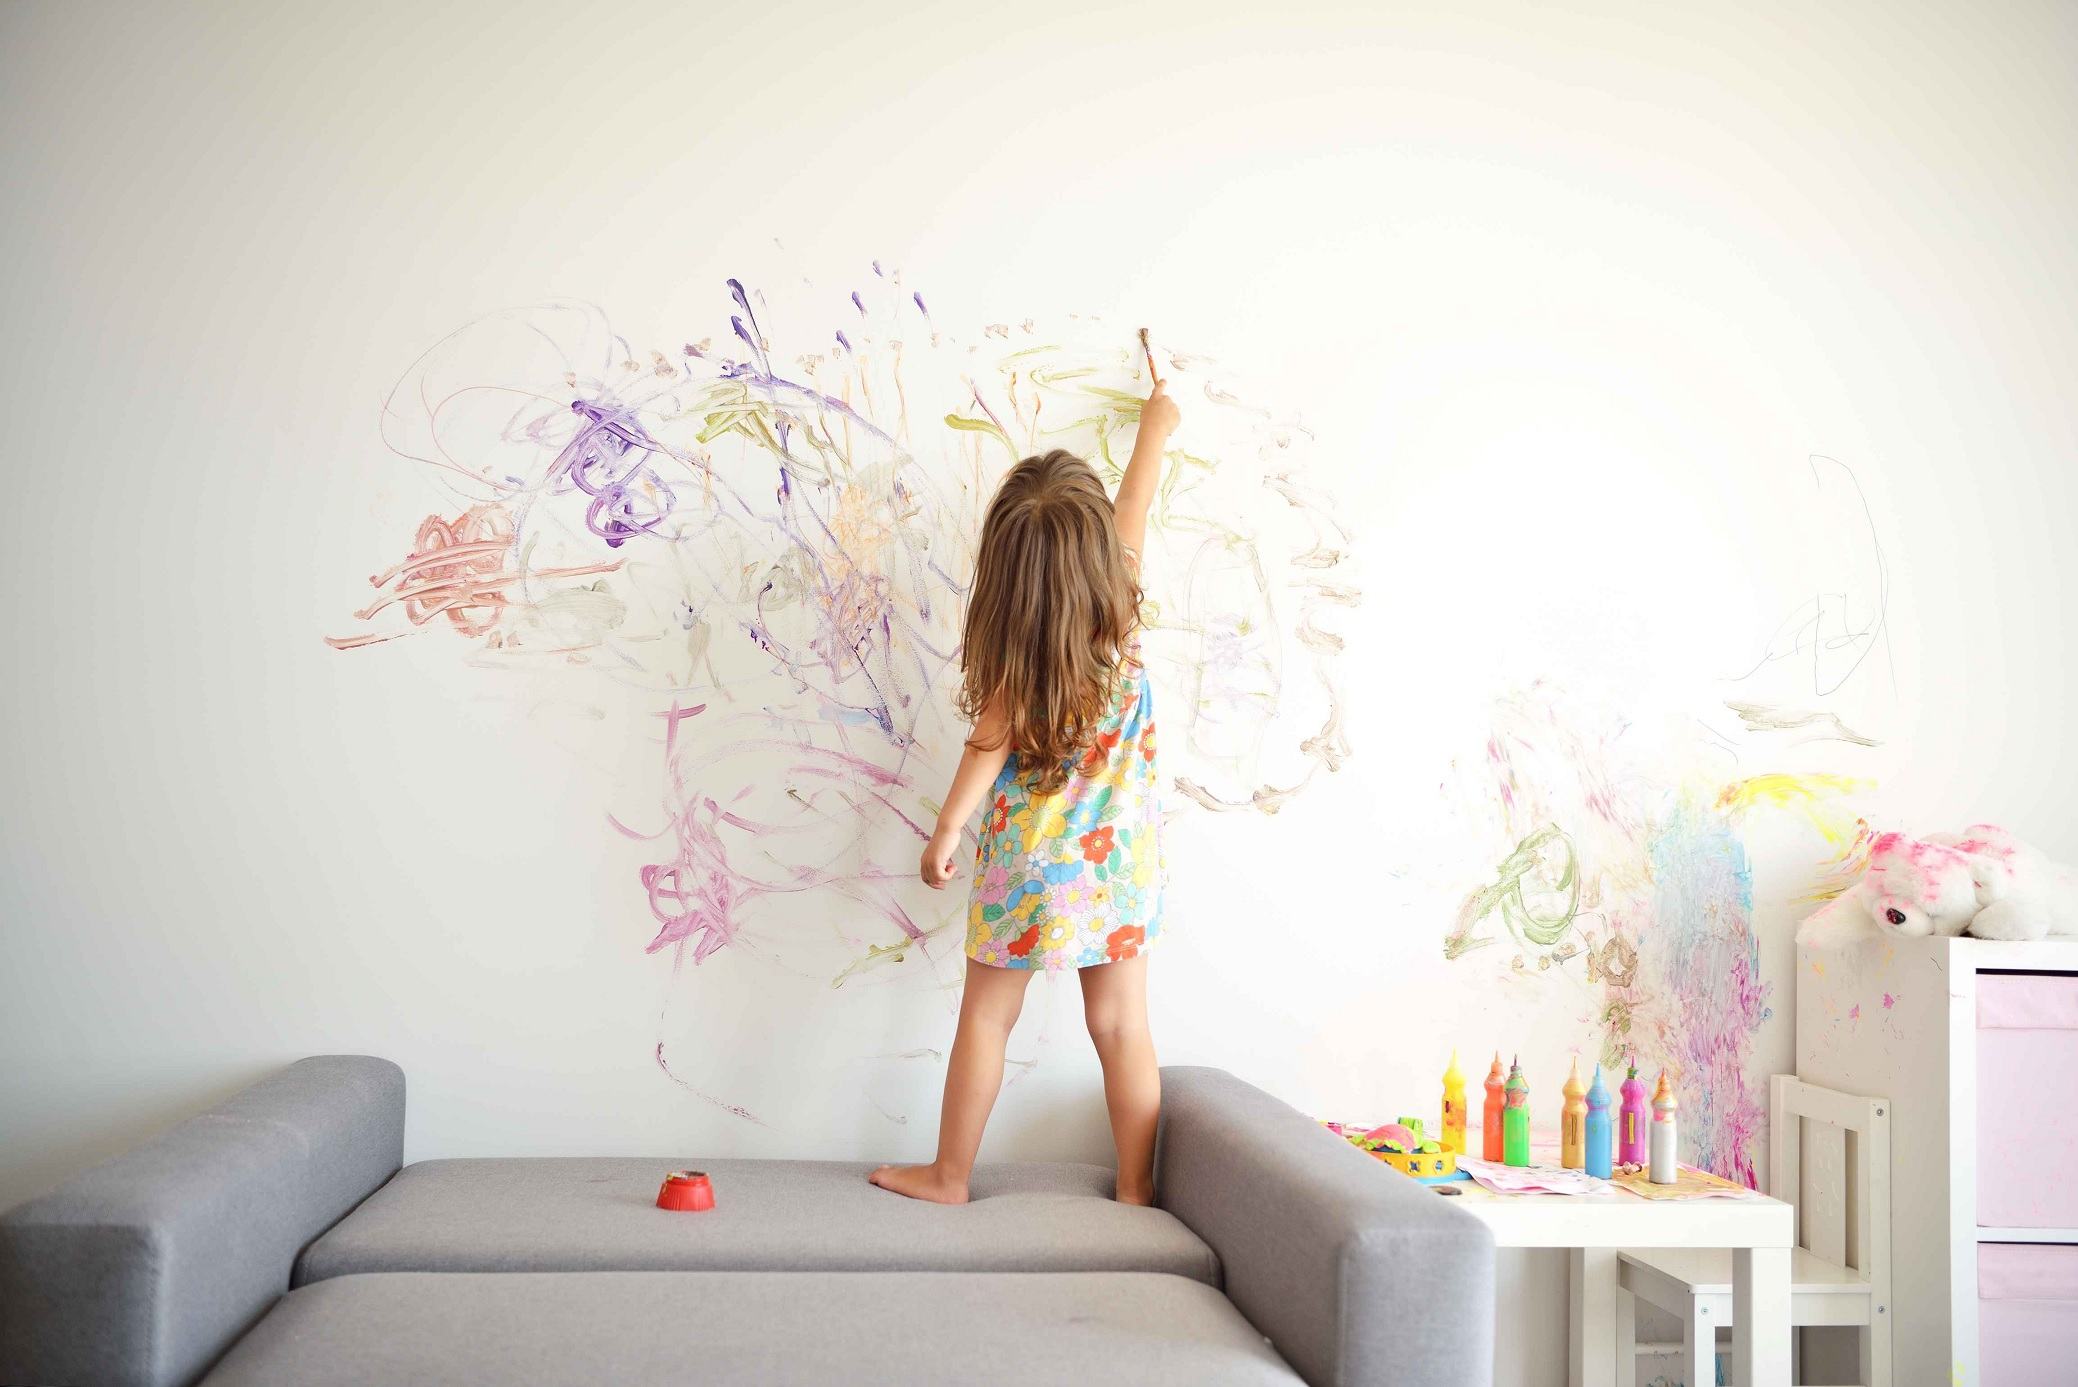 Copilul adora sa deseneze pe pereti? Trucul cu bicarbonat perfect si pentru el, si pentru mama